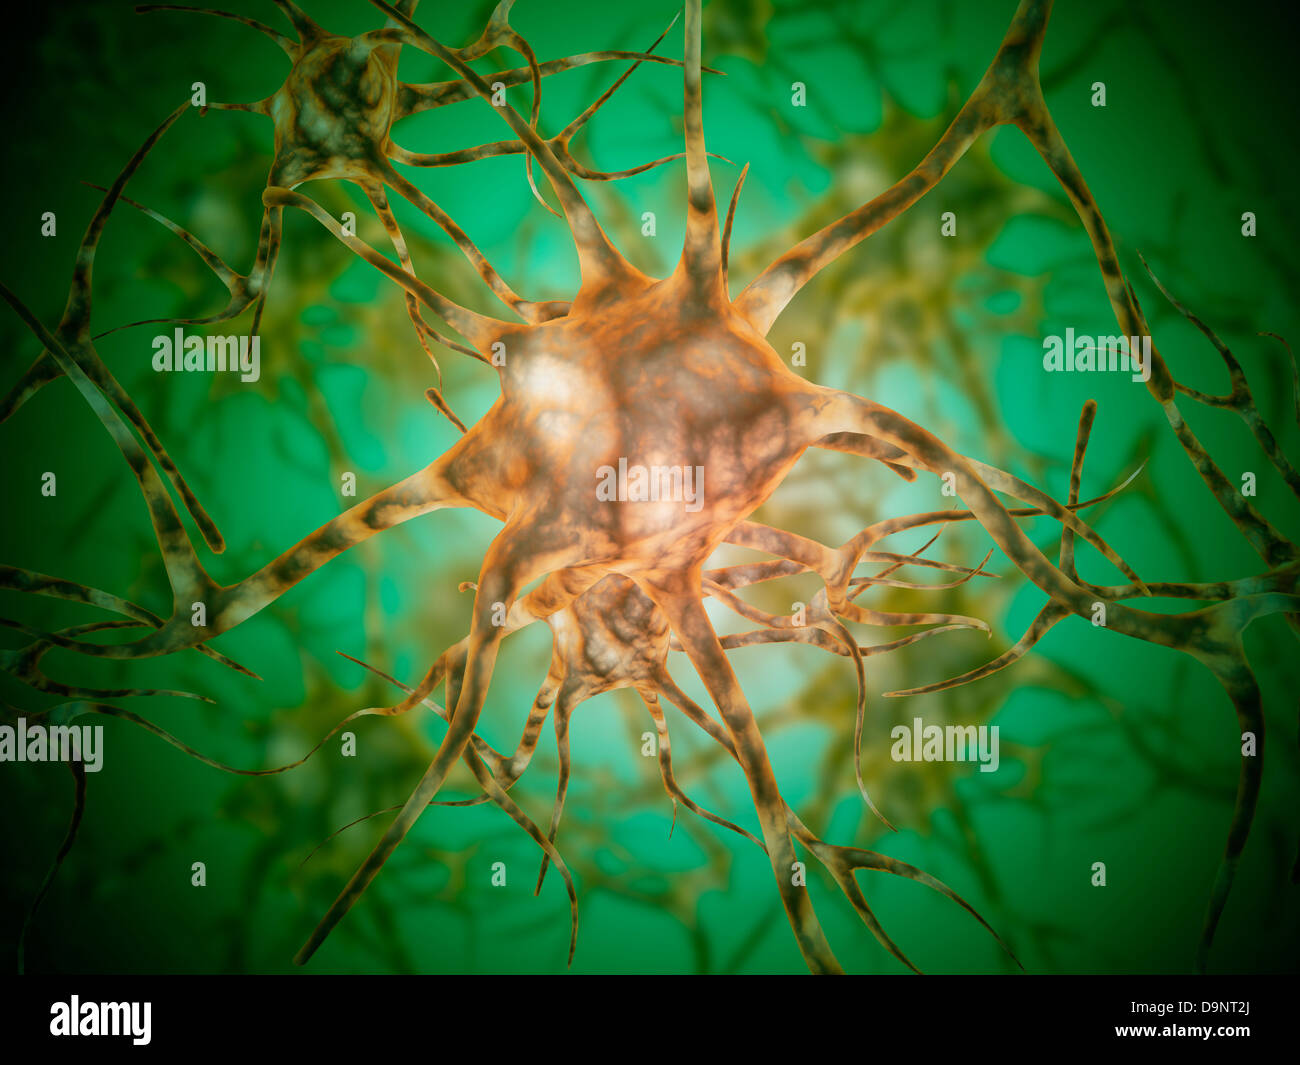 Vista microscópica de múltiples células nerviosas, conocidas como neuronas. Foto de stock